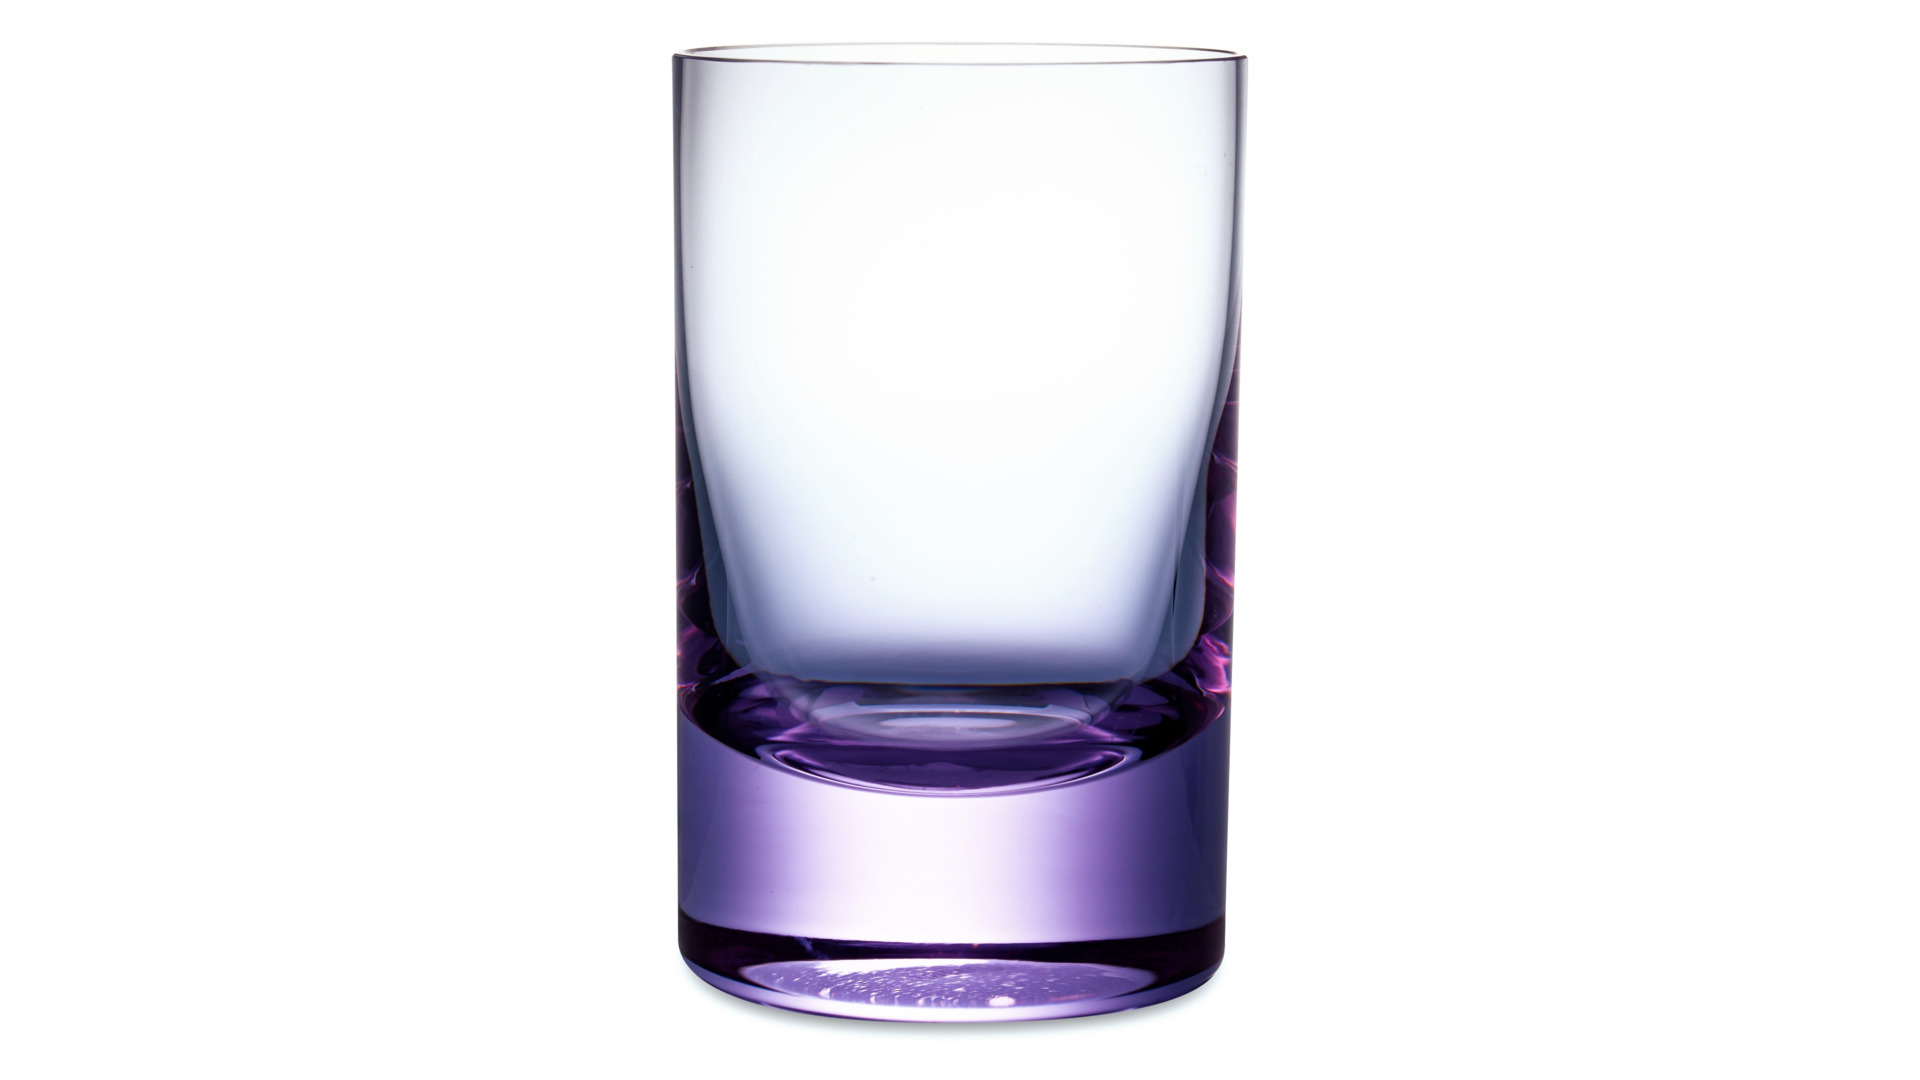 Набор стаканов для воды Moser Виски сет 220 мл, 4 цв, 4 шт